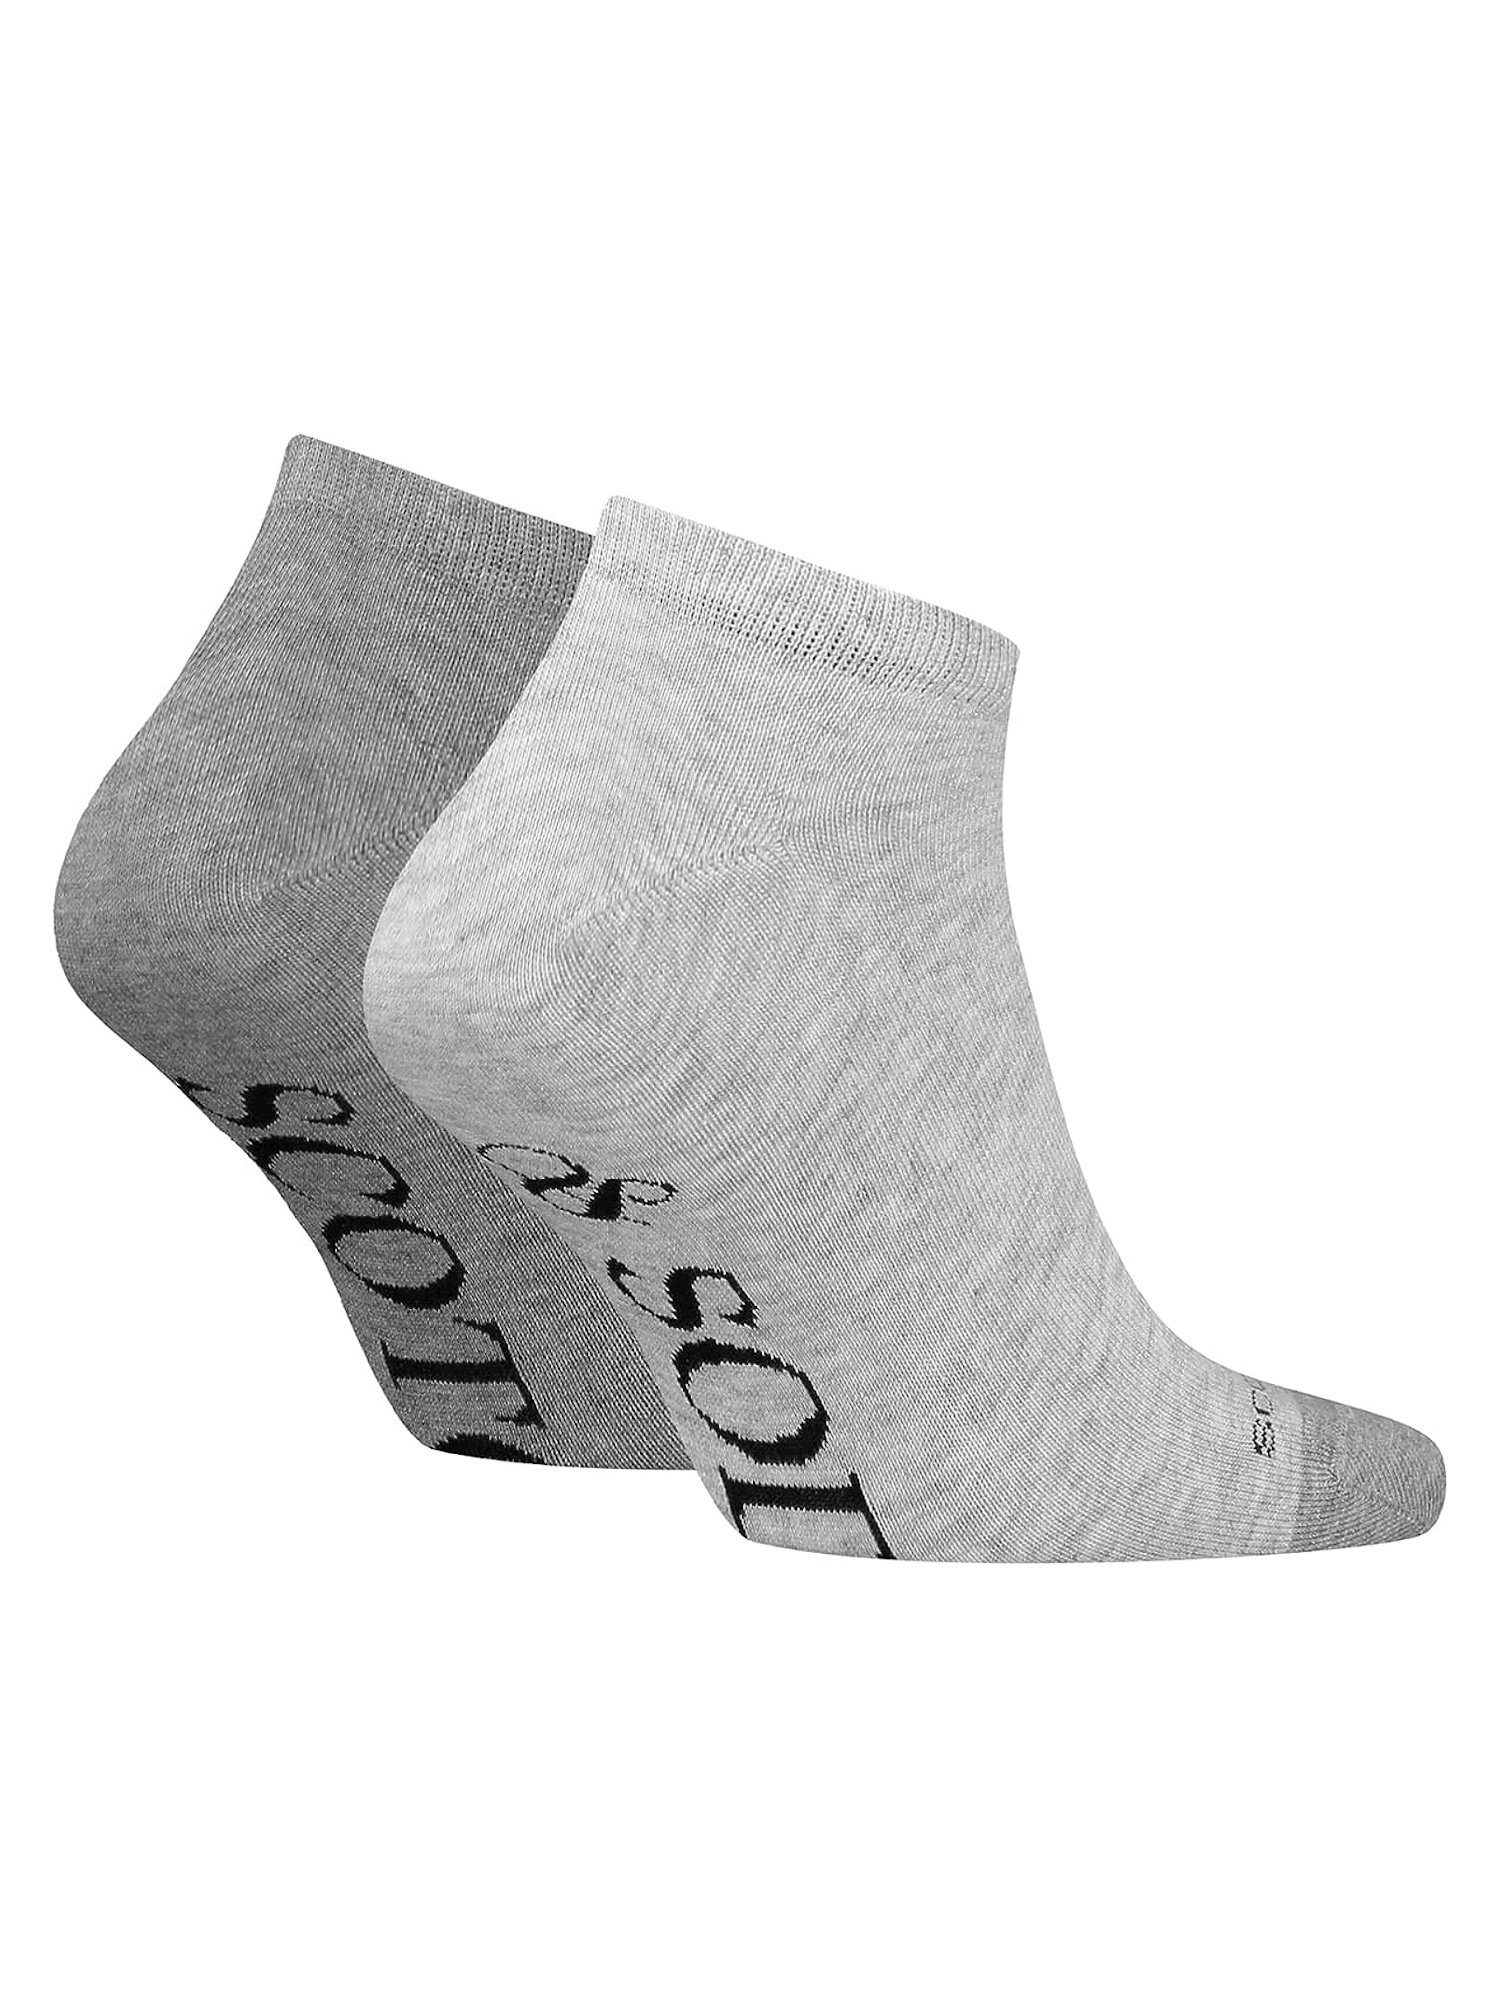 Dip Toe grau (2-Paar) Sneaker Socken Scotch Socks & Soda Socken Doppelpack